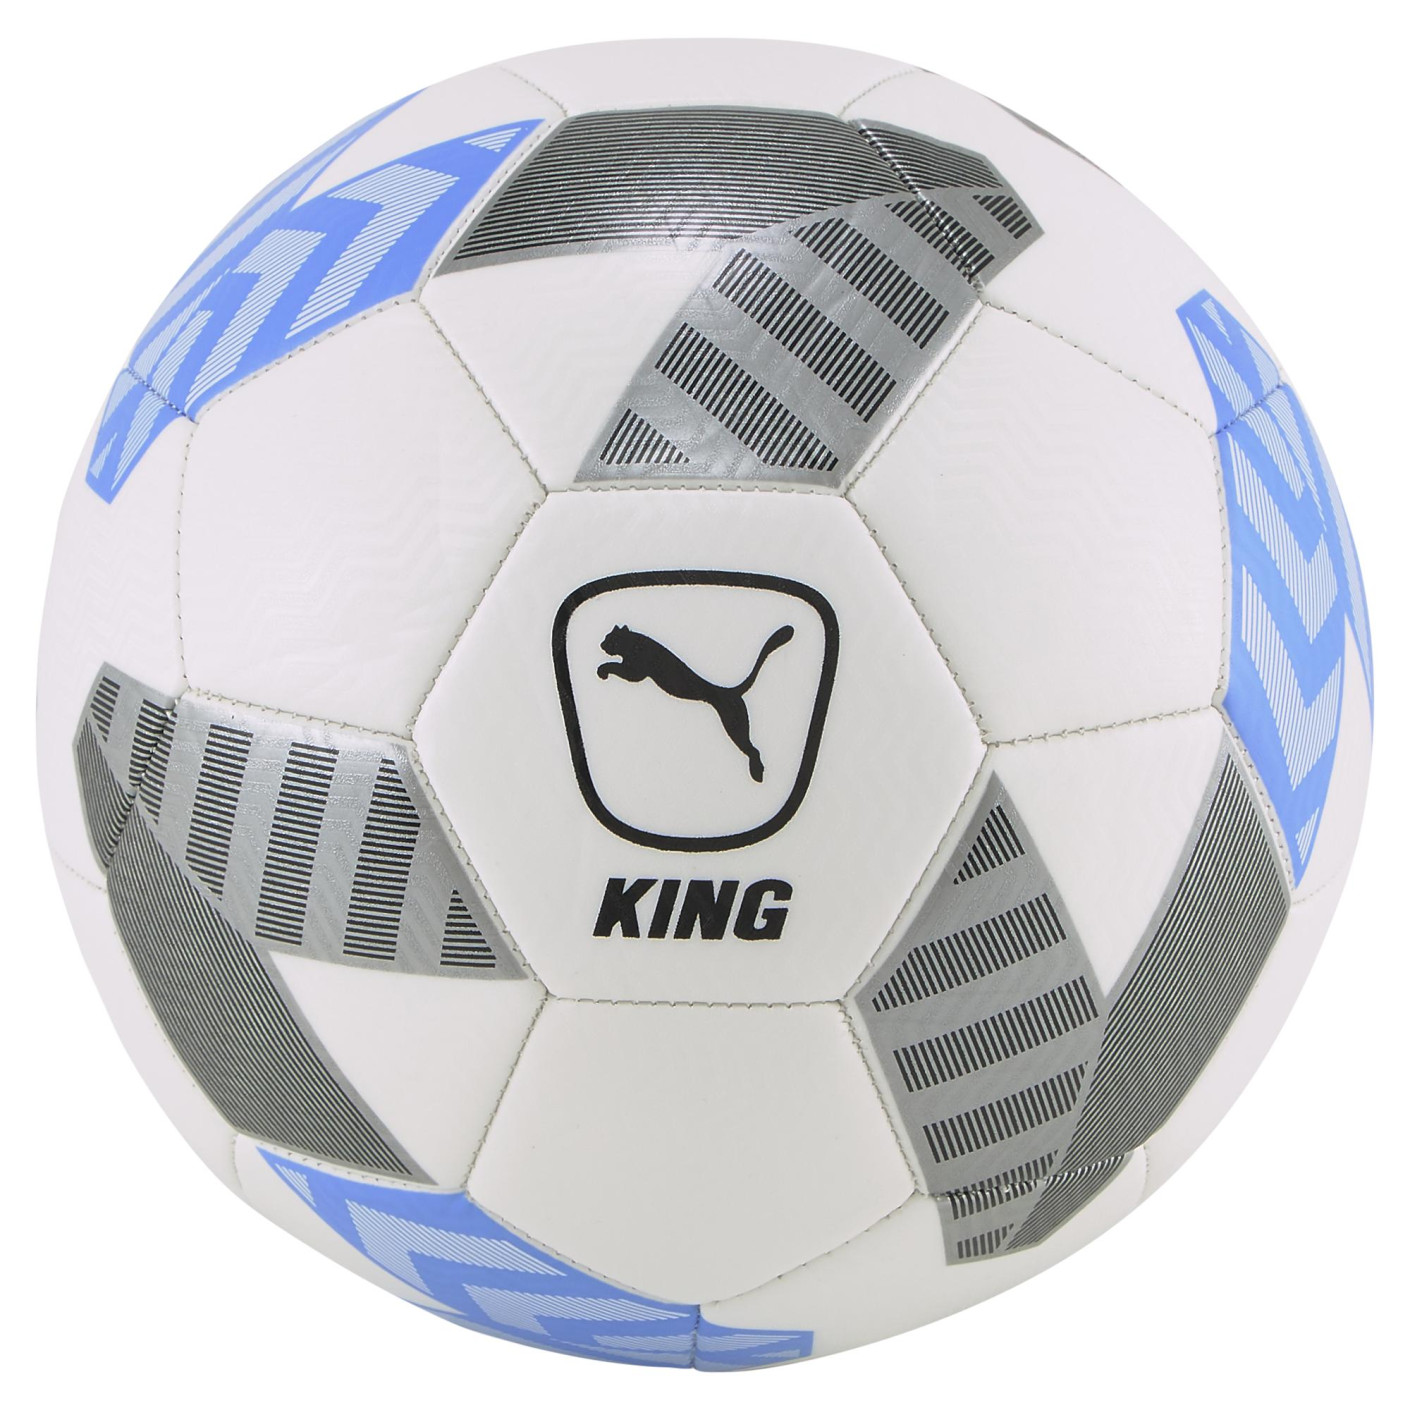 PUMA King Ballon de Football Blanc Bleu Gris